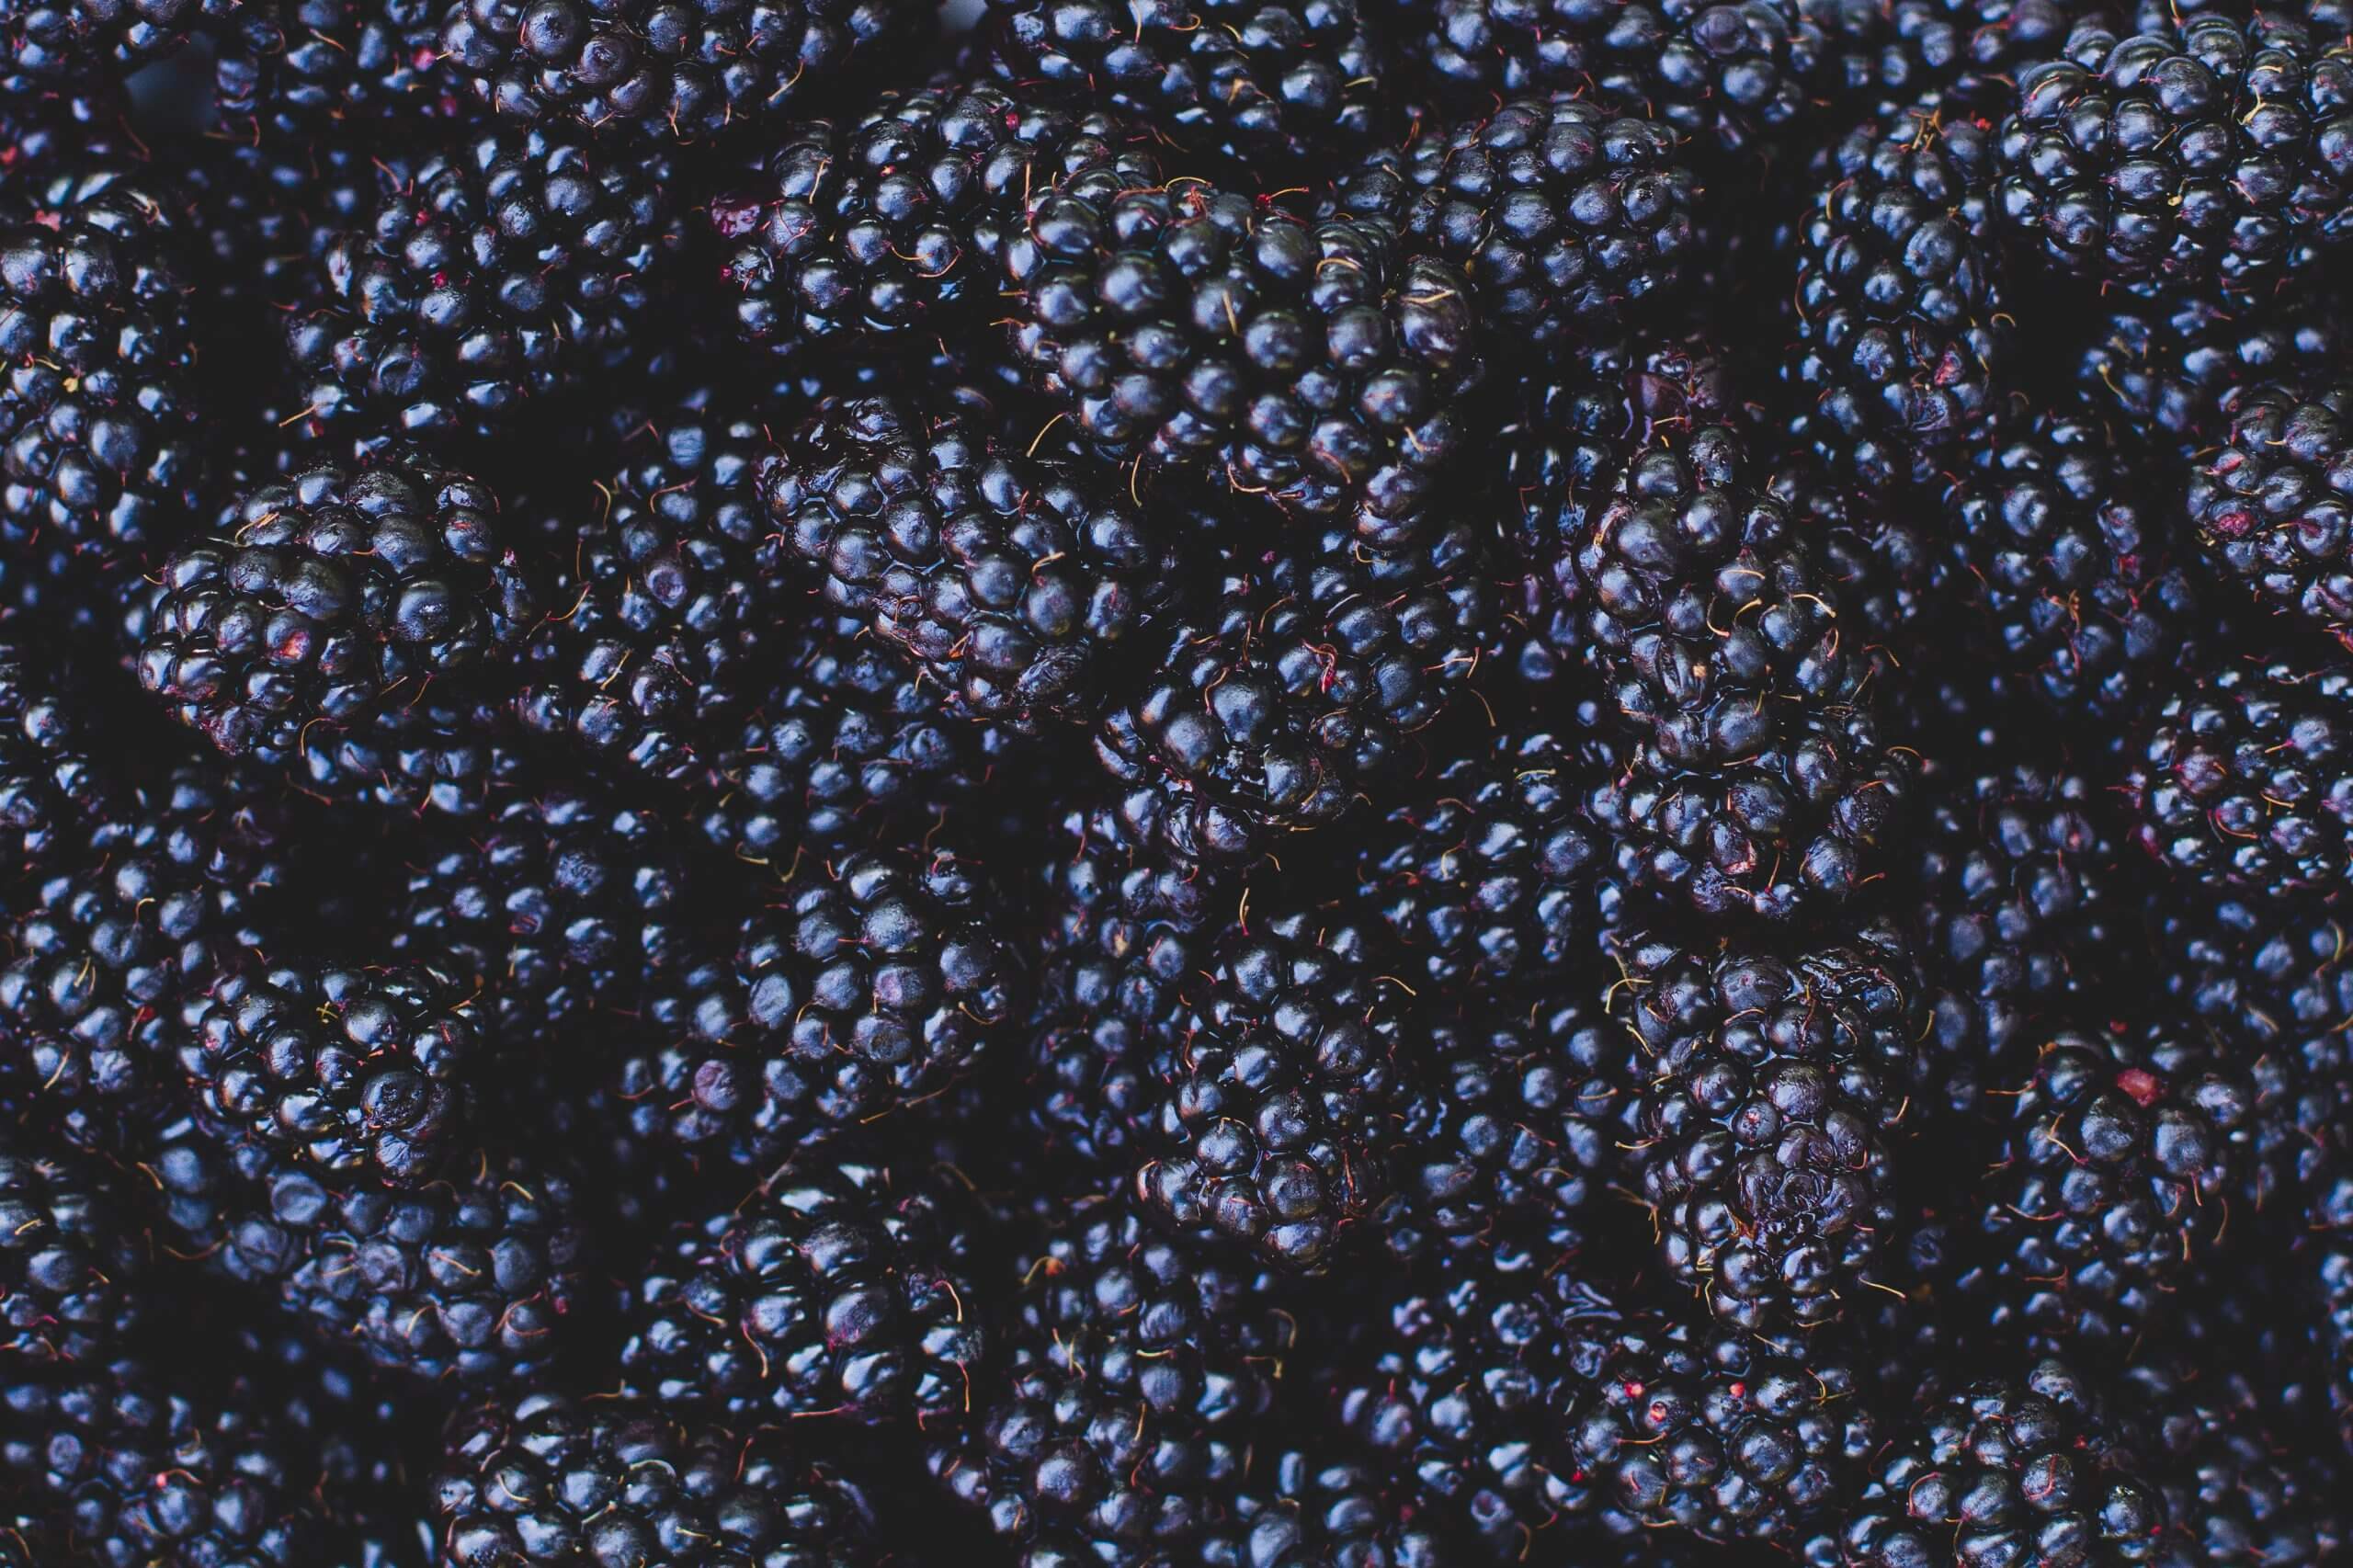 STahlbush Blackberries